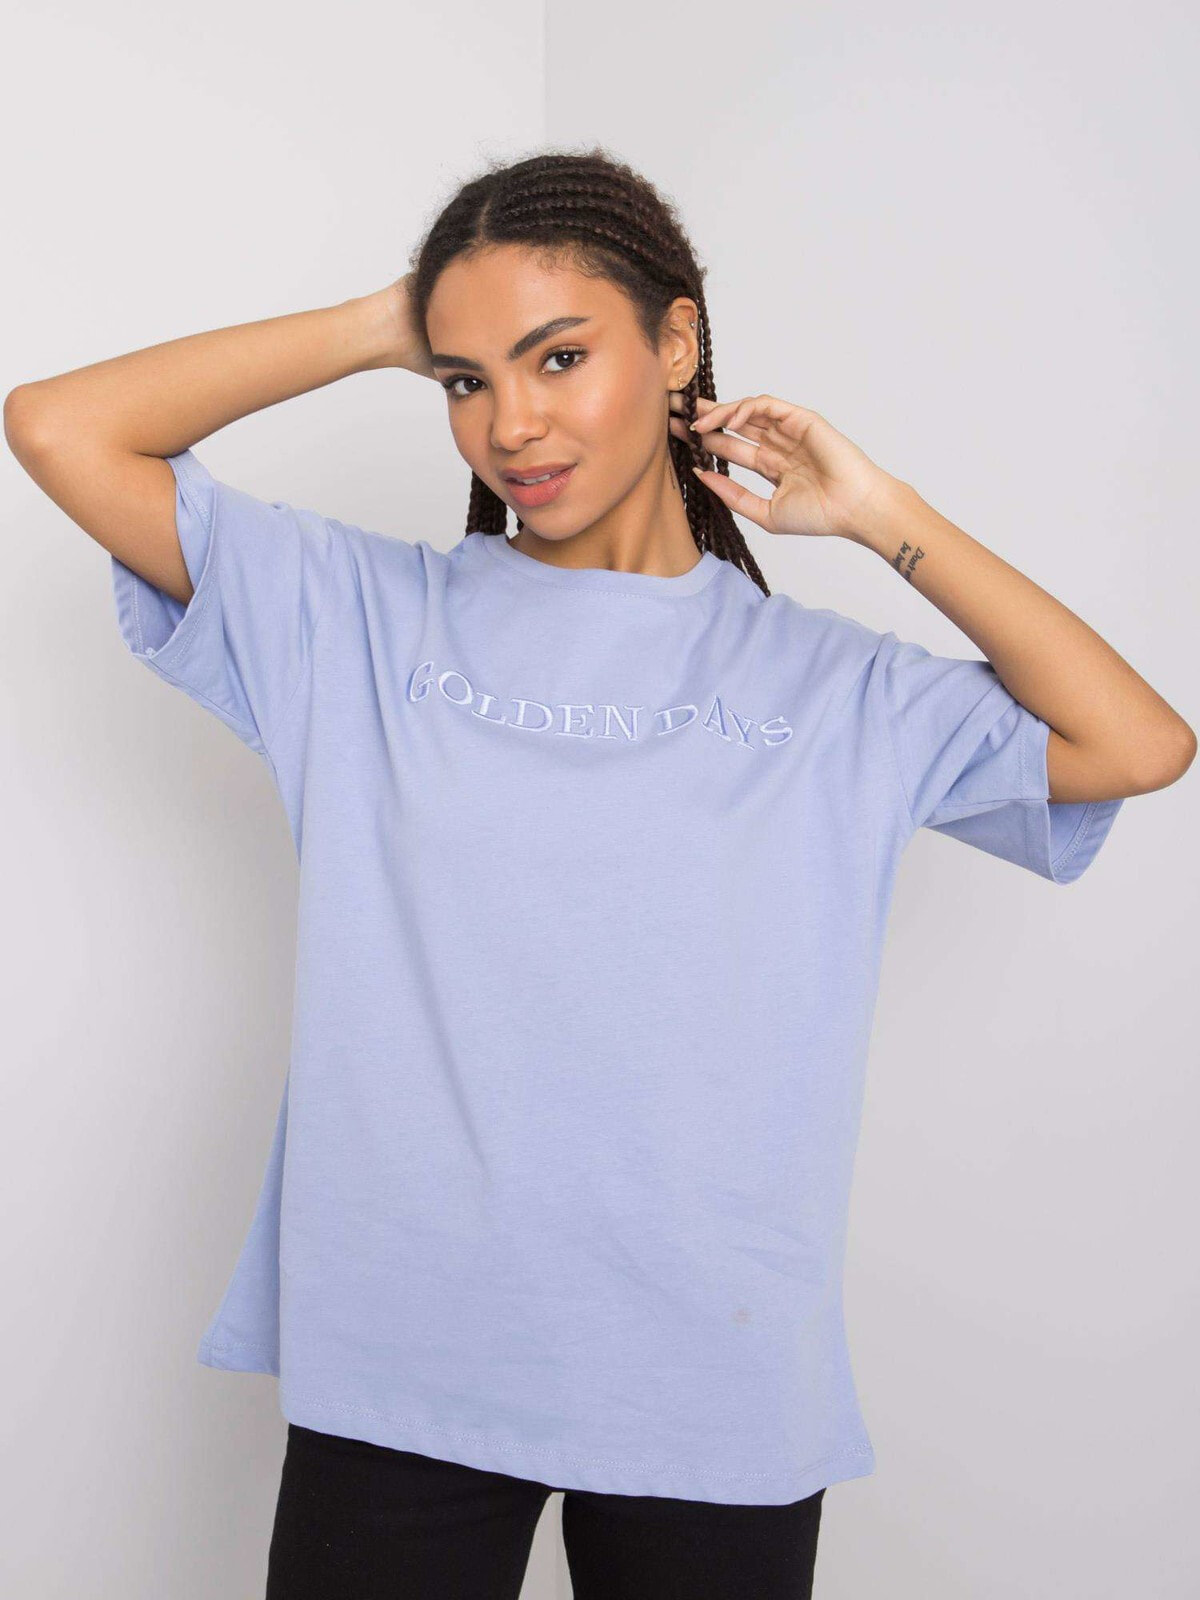 Женская футболка свободного кроя голубая Factory Price